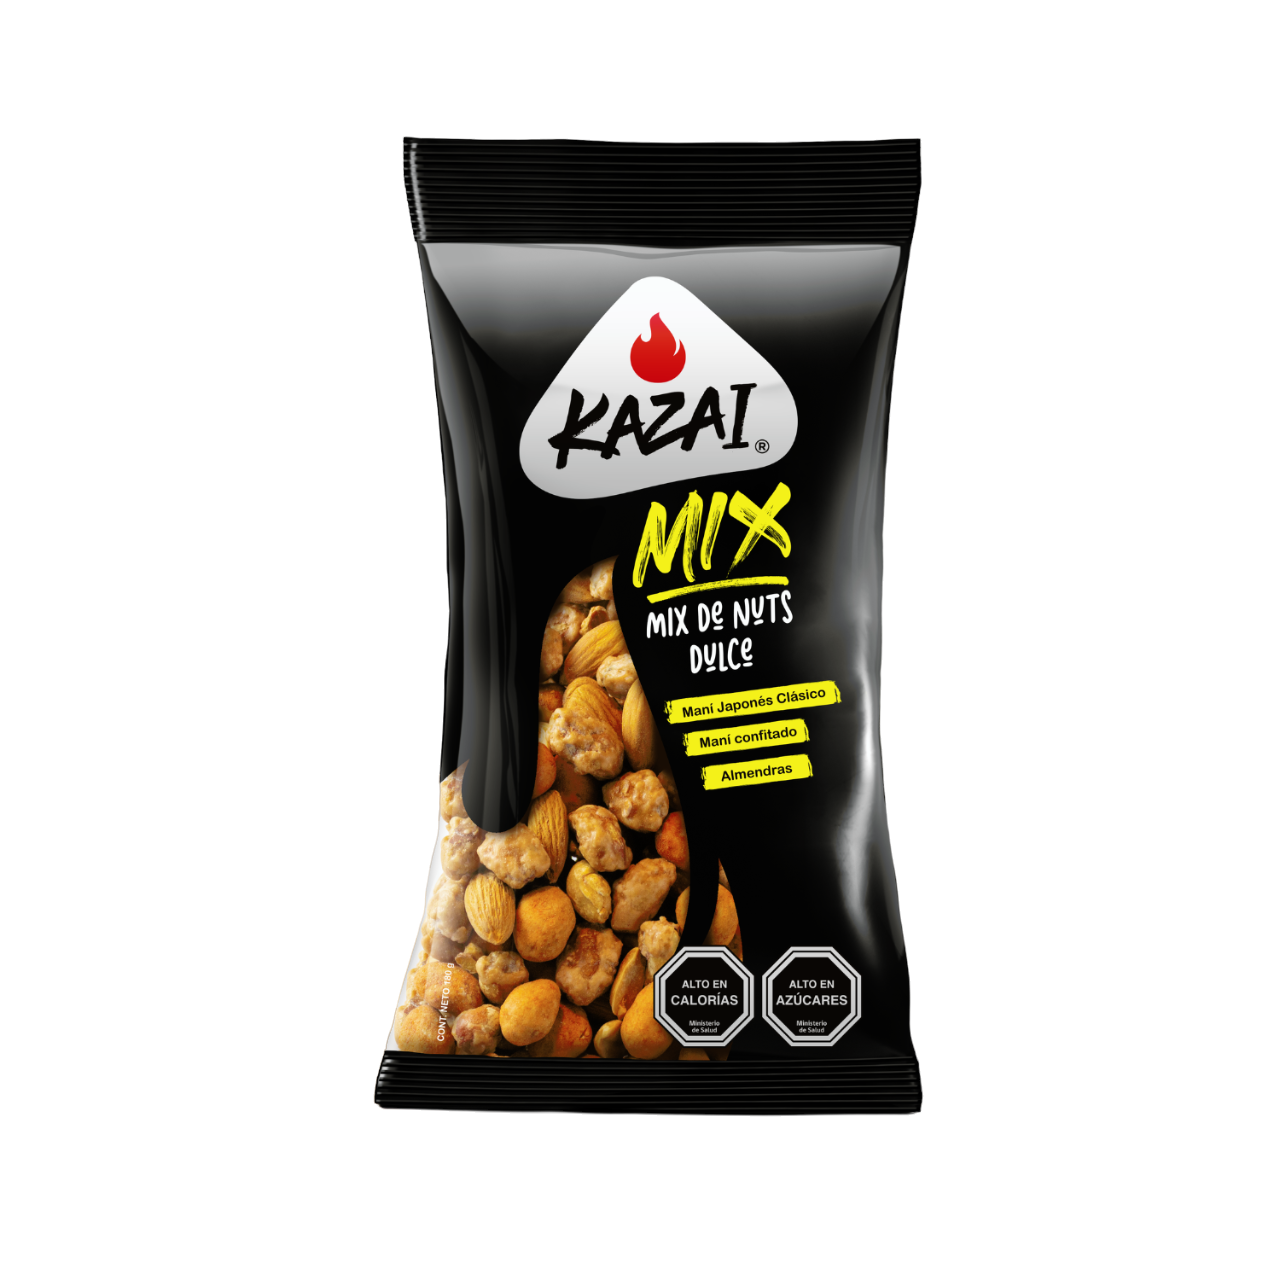 KAZAI MIX DE NUTS DULCE 180 GRS